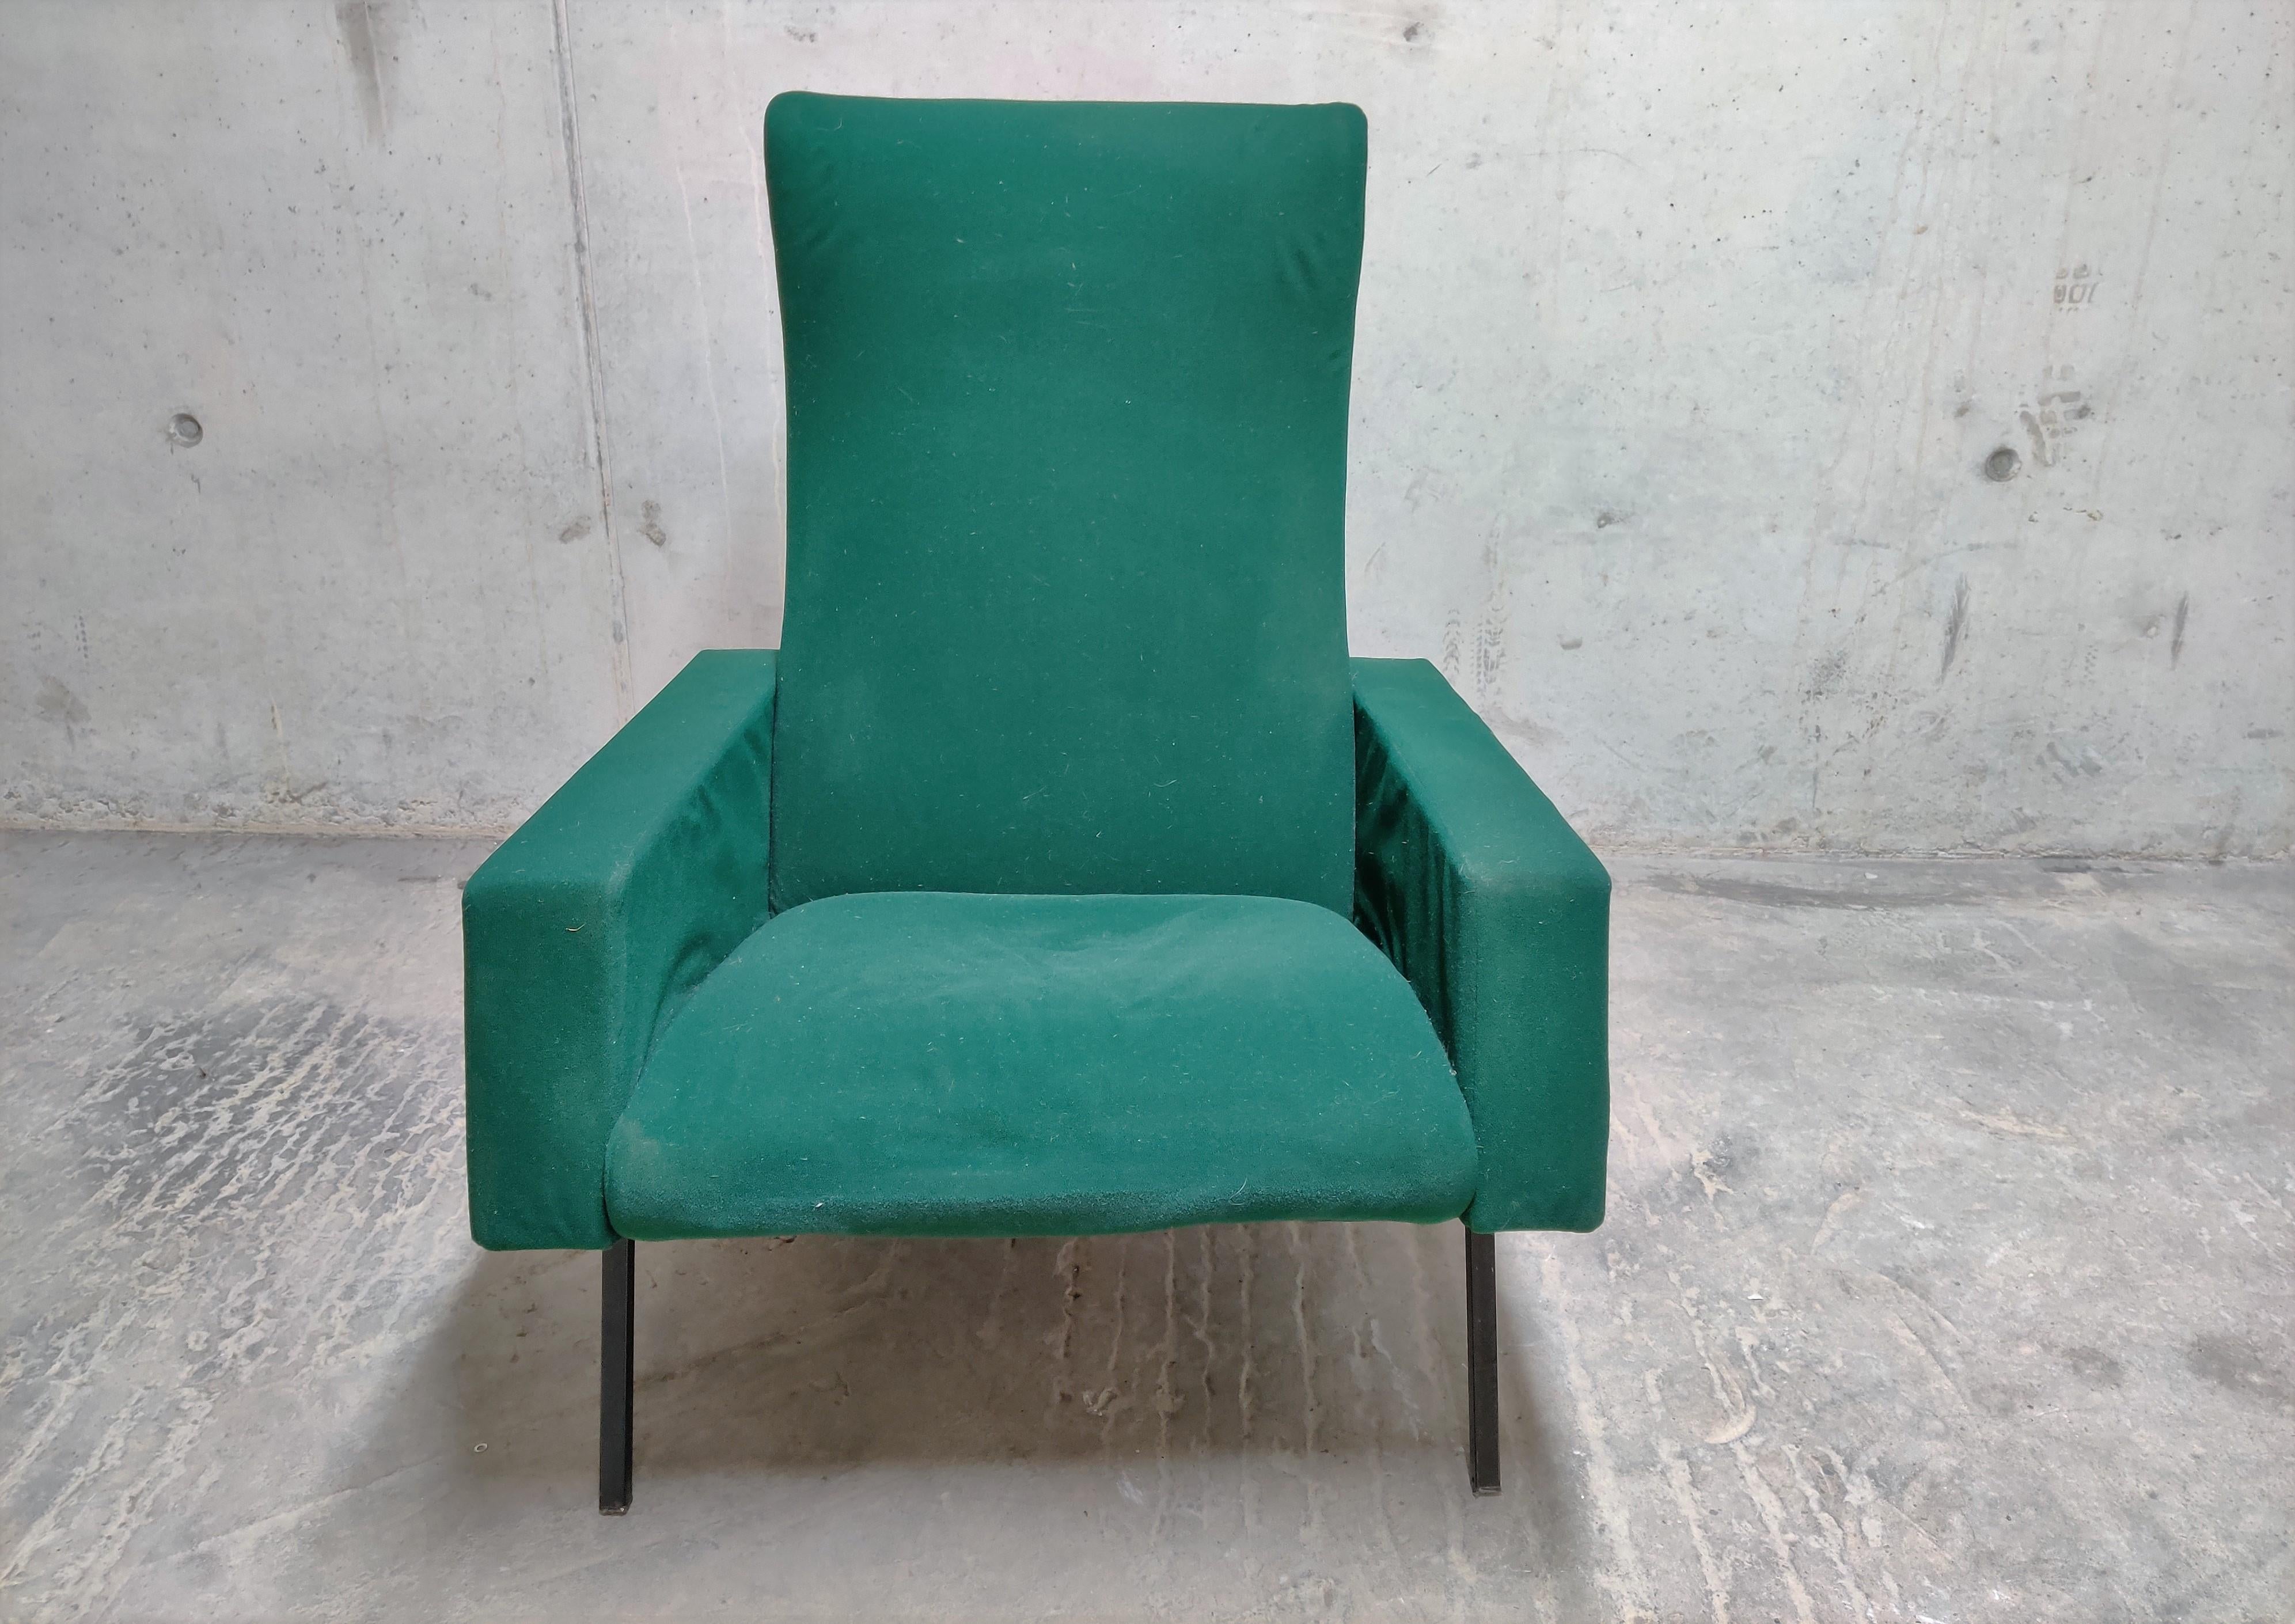 Loungesessel aus grünem Stoff Modell 'Trelax' von Pierre Guariche für Meurop.

Der Liegestuhl hat eine Fußstütze, so dass Sie eine sehr bequeme Position zum Entspannen einnehmen können.

Dieses Modell hat das gleiche Design wie die